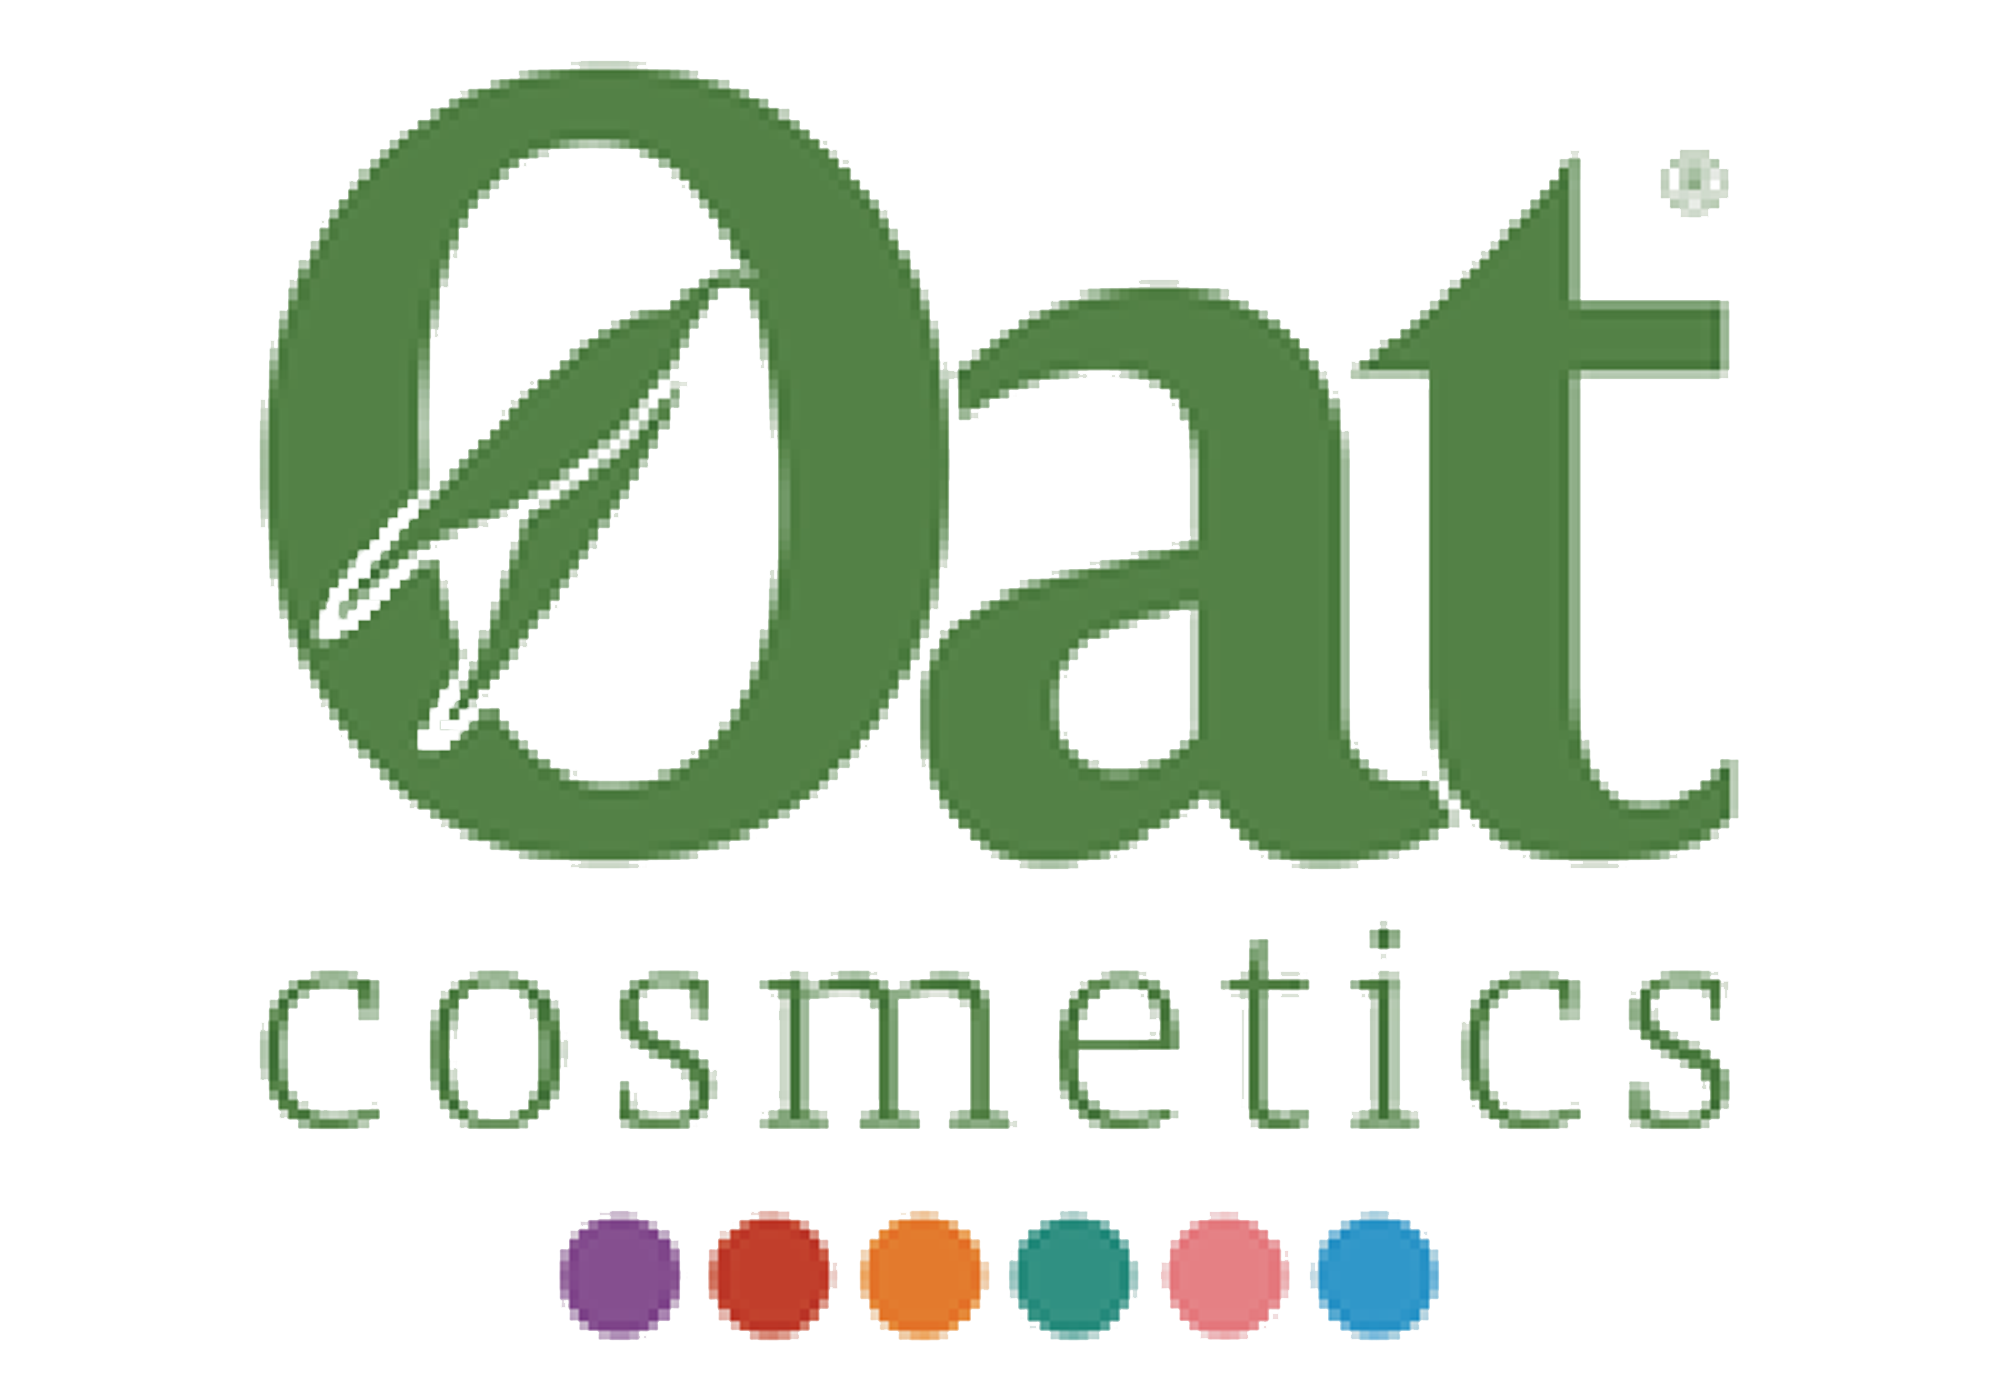 Oat Cosmetics